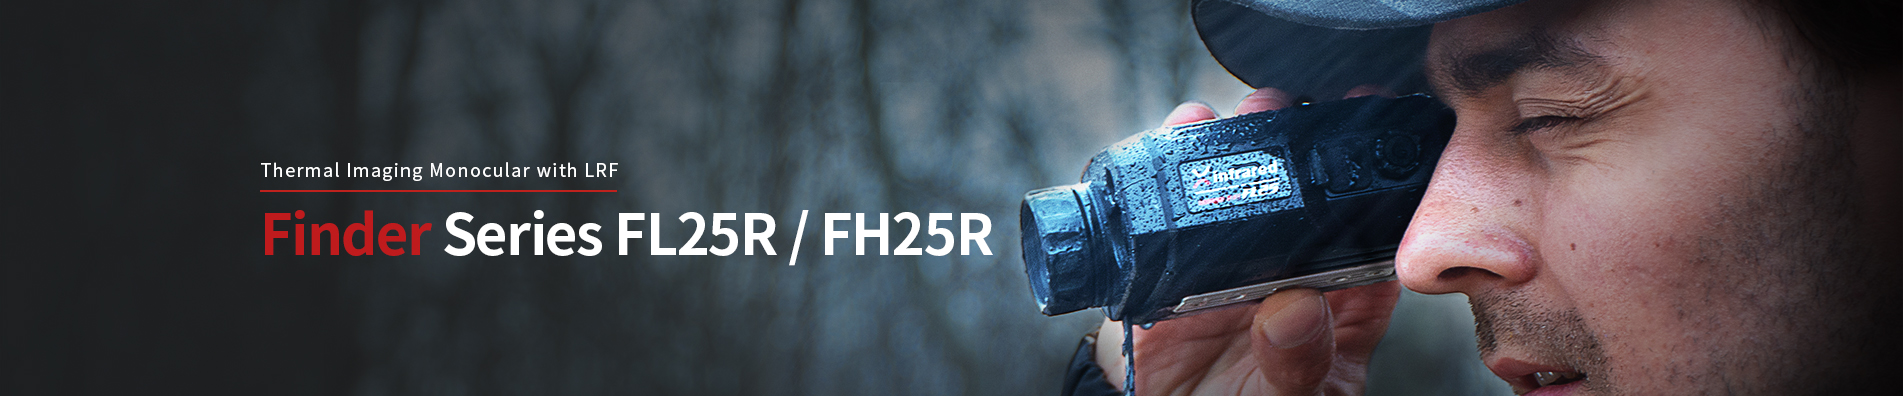 Finder FH25R & FL25R